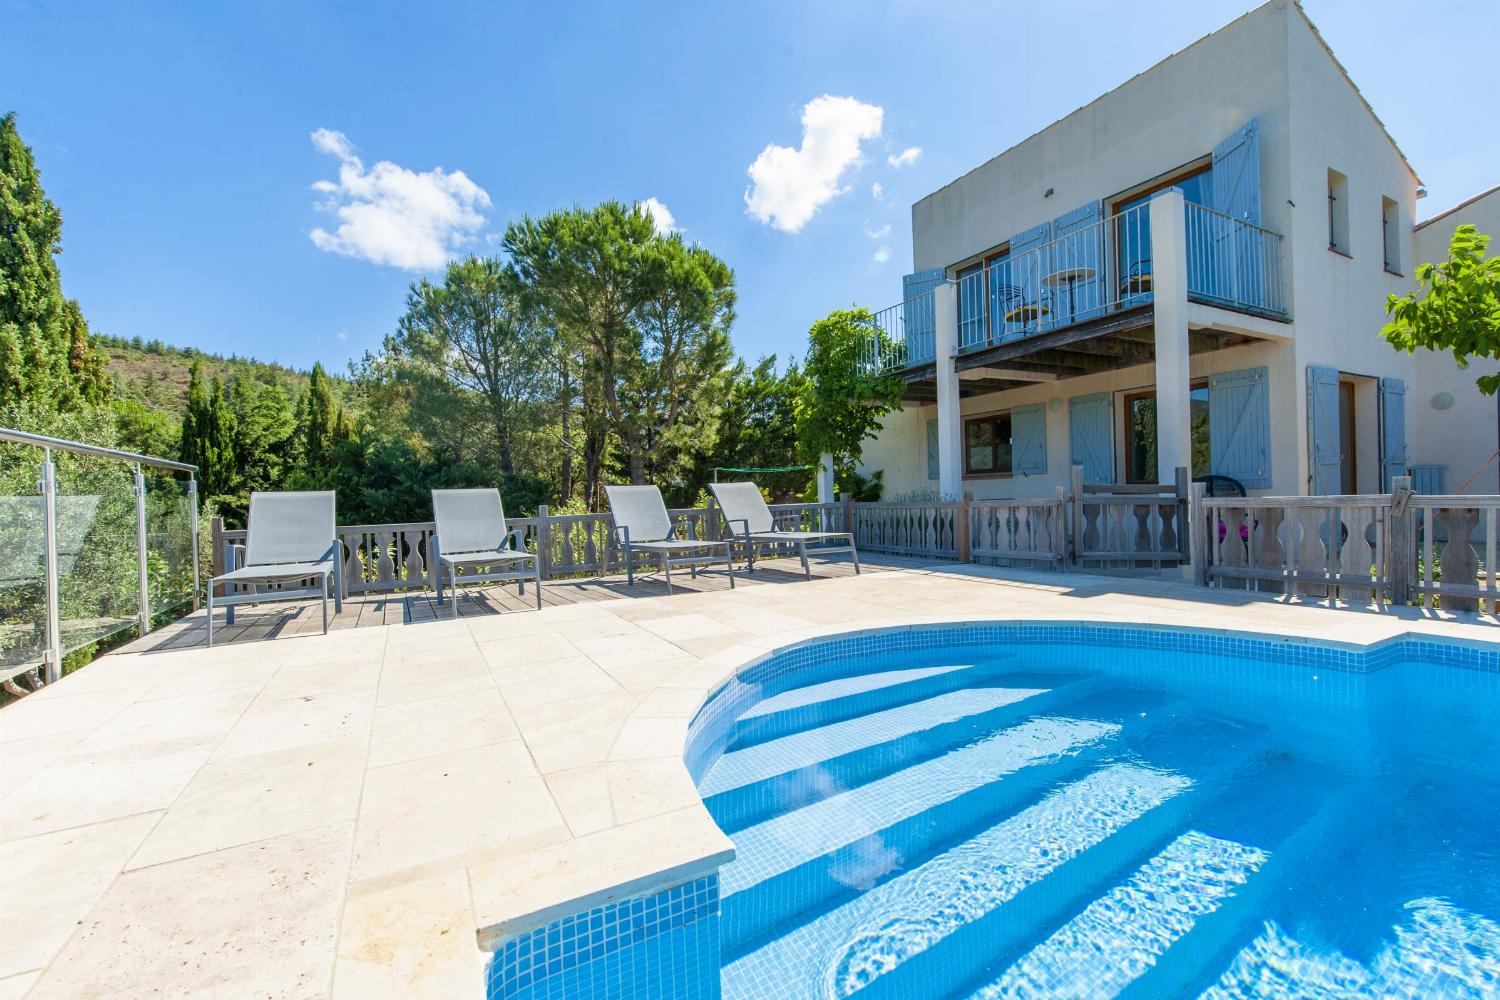 Villa de vacances dans le sud de la France avec piscine privée